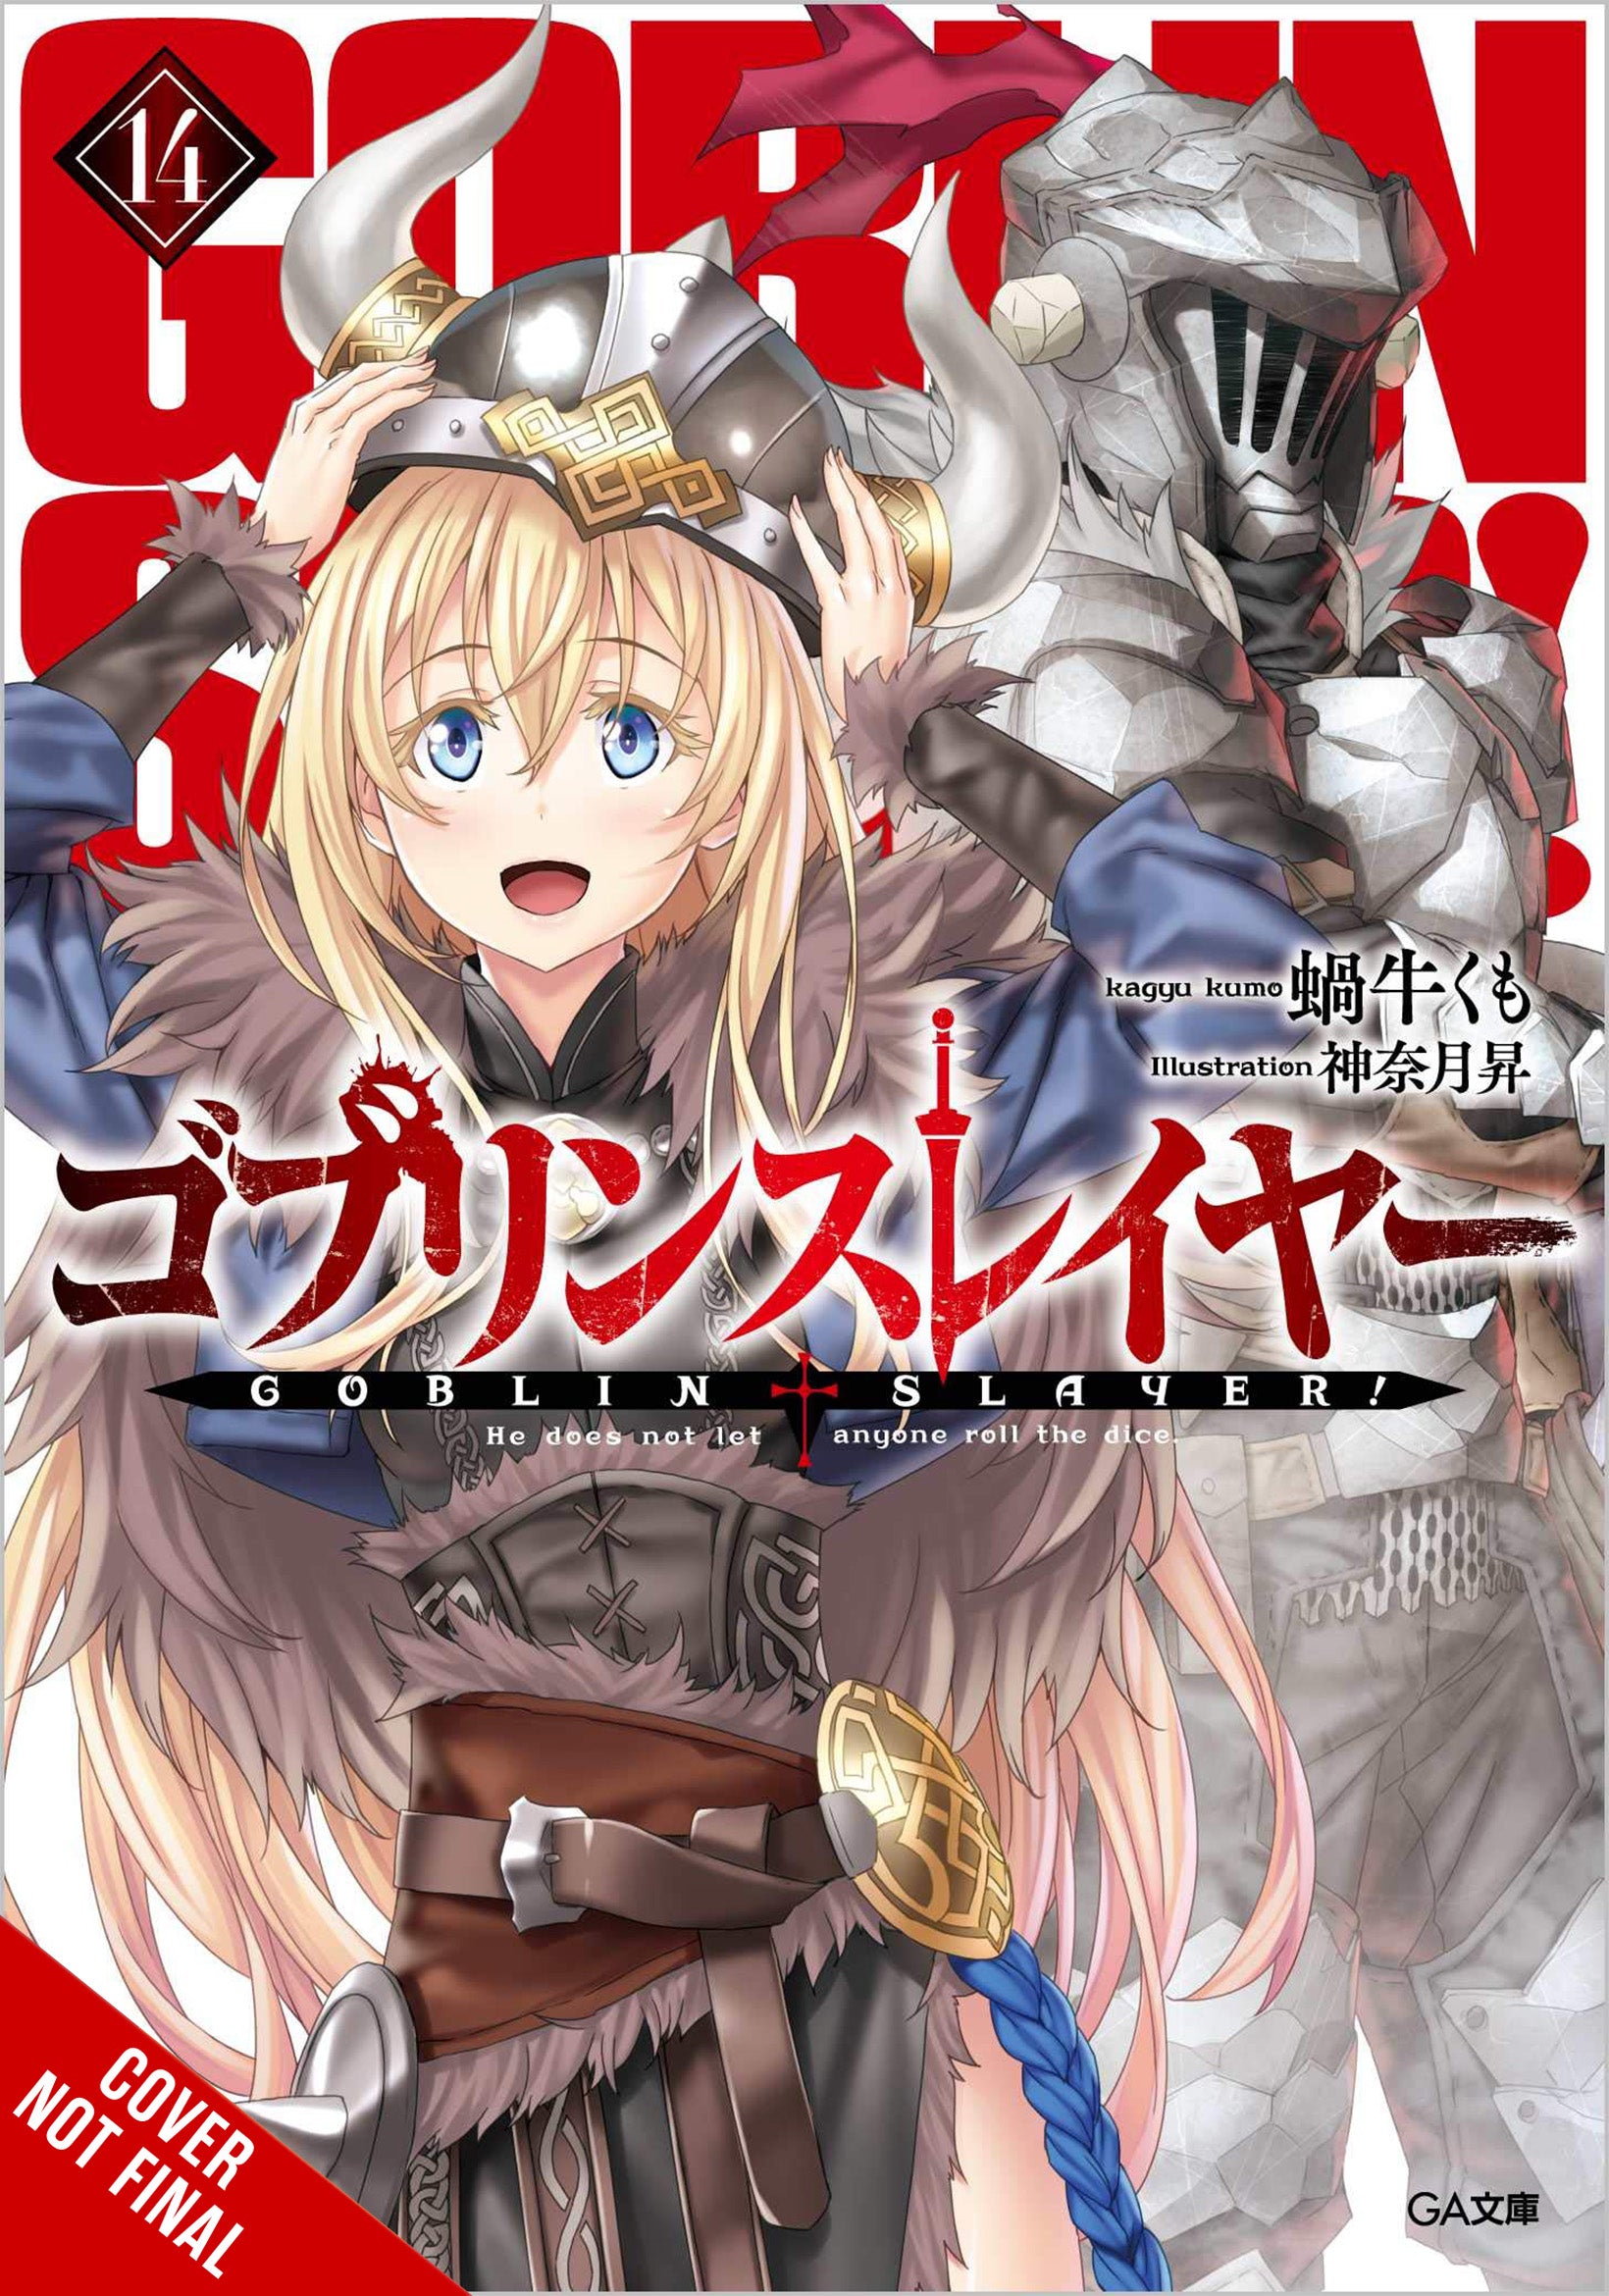 Goblin Slayer, Vol. 1 (Goblin Slayer Manga, #1) by Kumo Kagyu